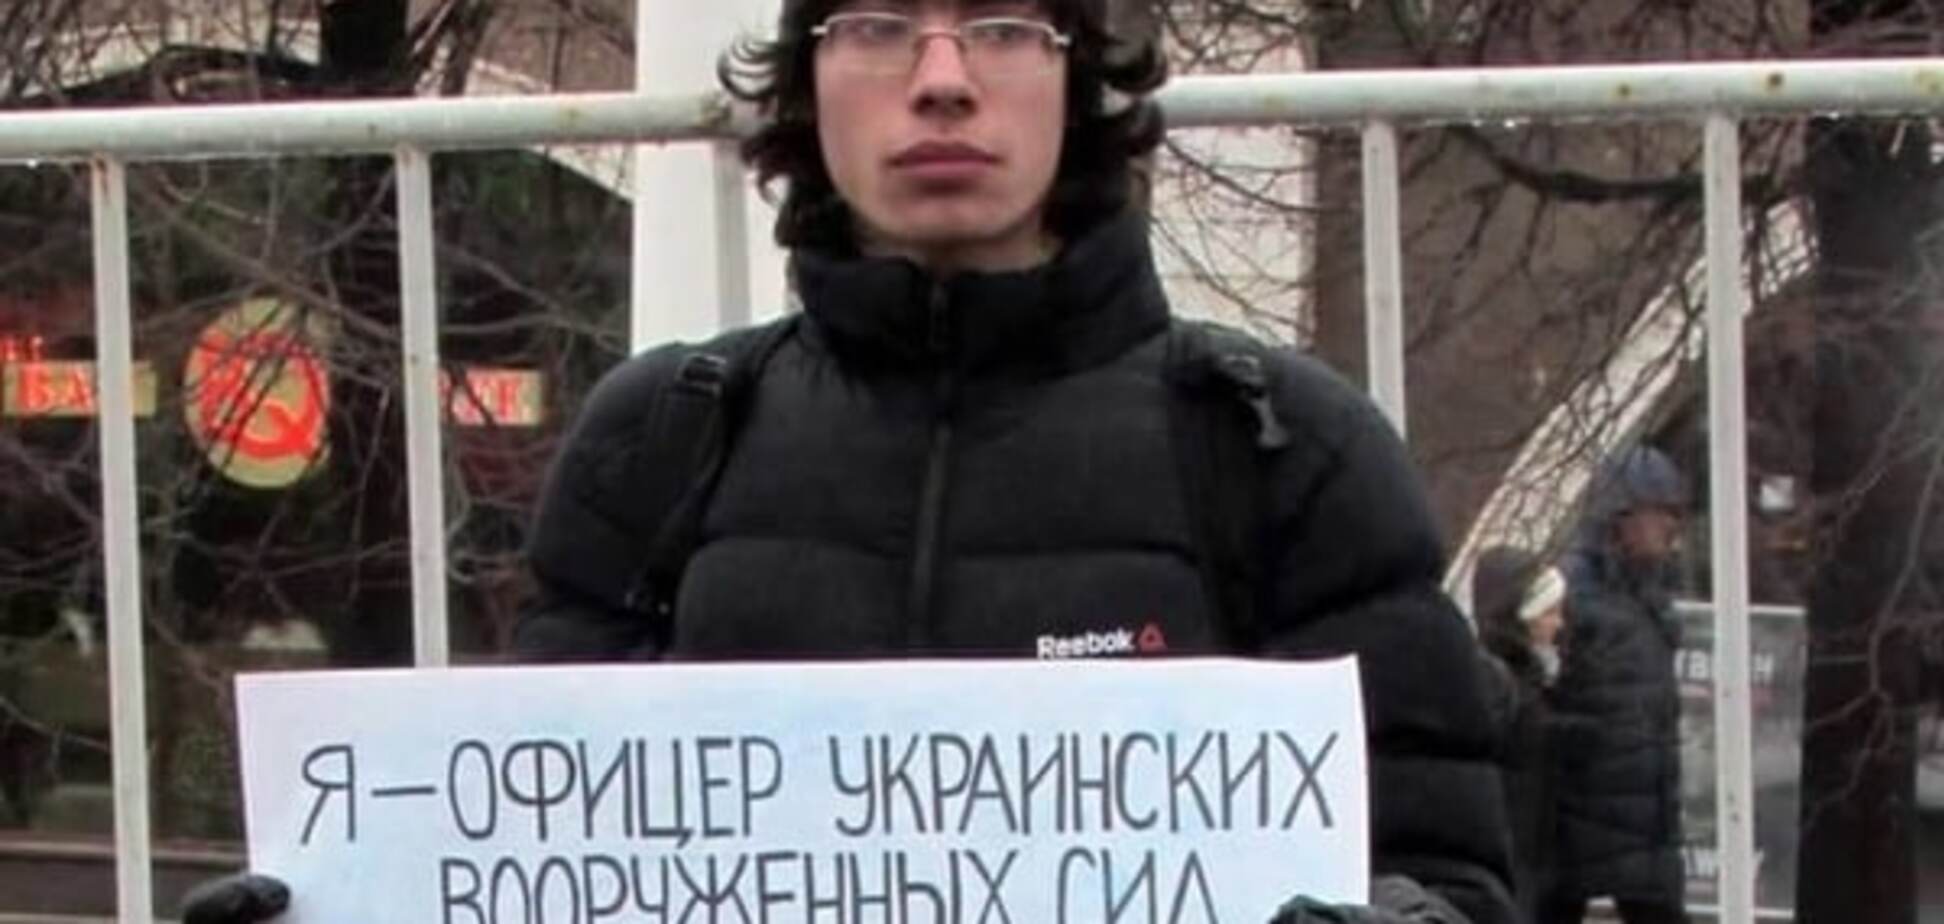 'Бандеровец, пошел на х**': в Москве мать выгнала сына за поддержку Савченко